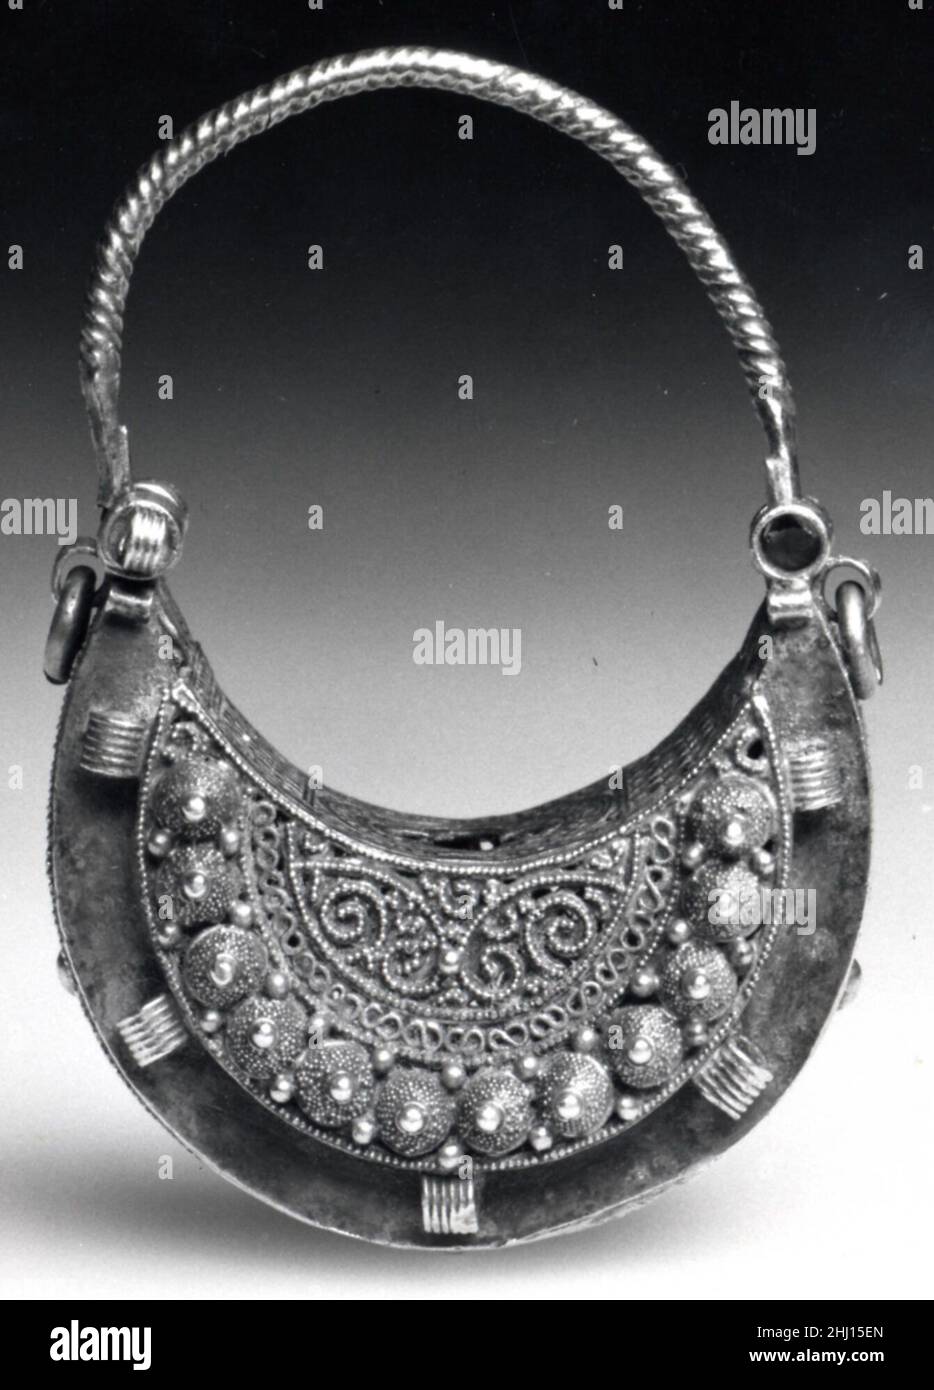 Ohrring 11th Jahrhundert dieser halbmondförmige (hilal) Ohrring wurde mit filigraner, perlenförmiger Granulation und mehreren Schleifen um den Umfang und das Innere hergestellt, die einst Edelsteine anfügten. Diese Merkmale, zusammen mit dem hemisphäre Ornament, sind typisch für den opulenten Schmuck aus der Fatimiden-Zeit (909–1171). Die Fatimiden regierten ein Königreich, das sich über Nordafrika, die Levante und Hijaz erstreckte und bis nach Nubia, dem heutigen Sudan, reichte, wo sie die Kontrolle über die wichtigen Goldminen behielt, die die Rohstoffe lieferten, die für die Herstellung dieser prächtigen Juwelen erforderlich waren. Diesen Ohrring Stockfoto